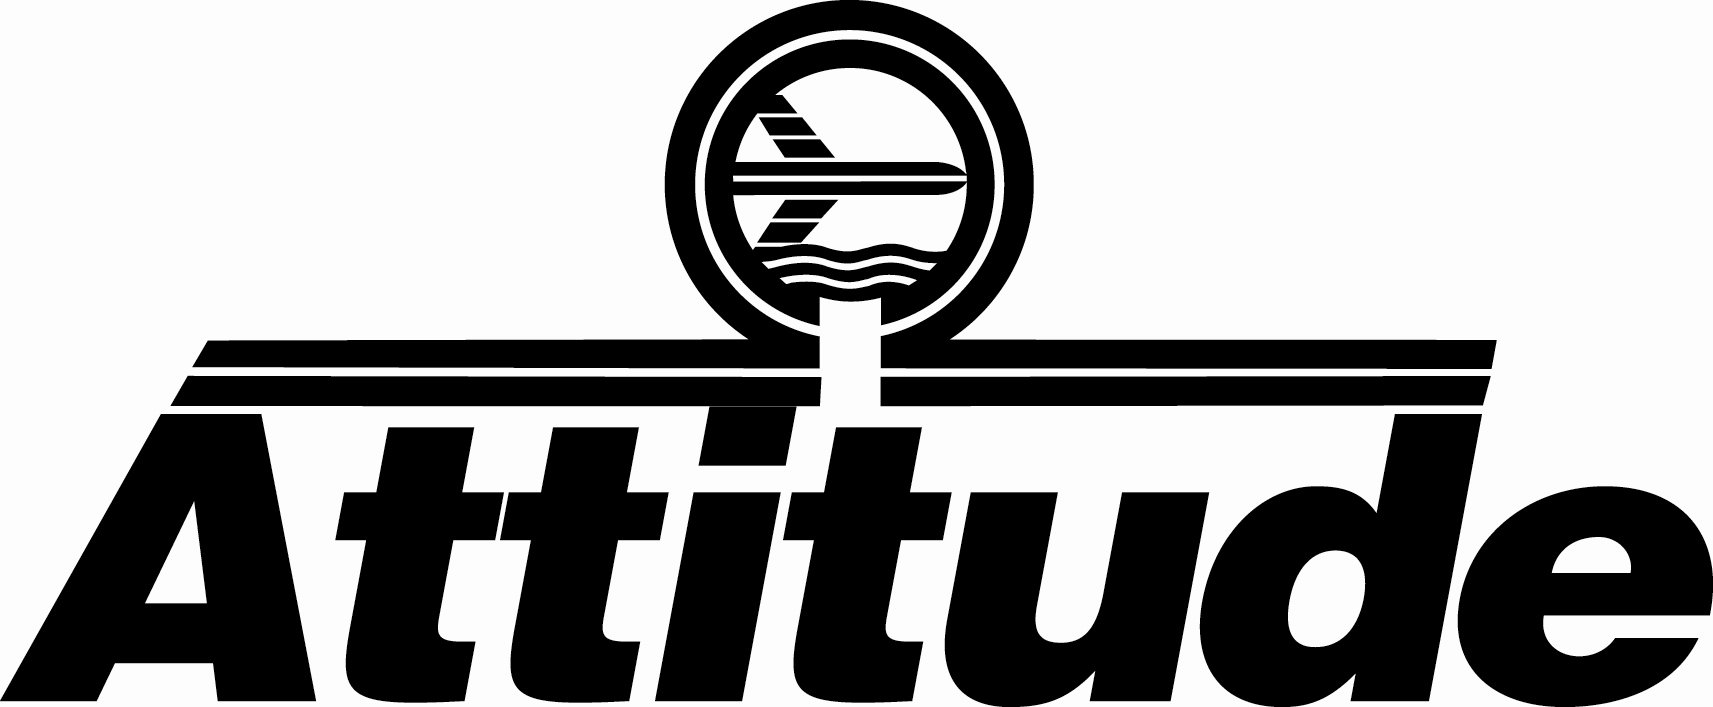 Trademark Logo ATTITUDE